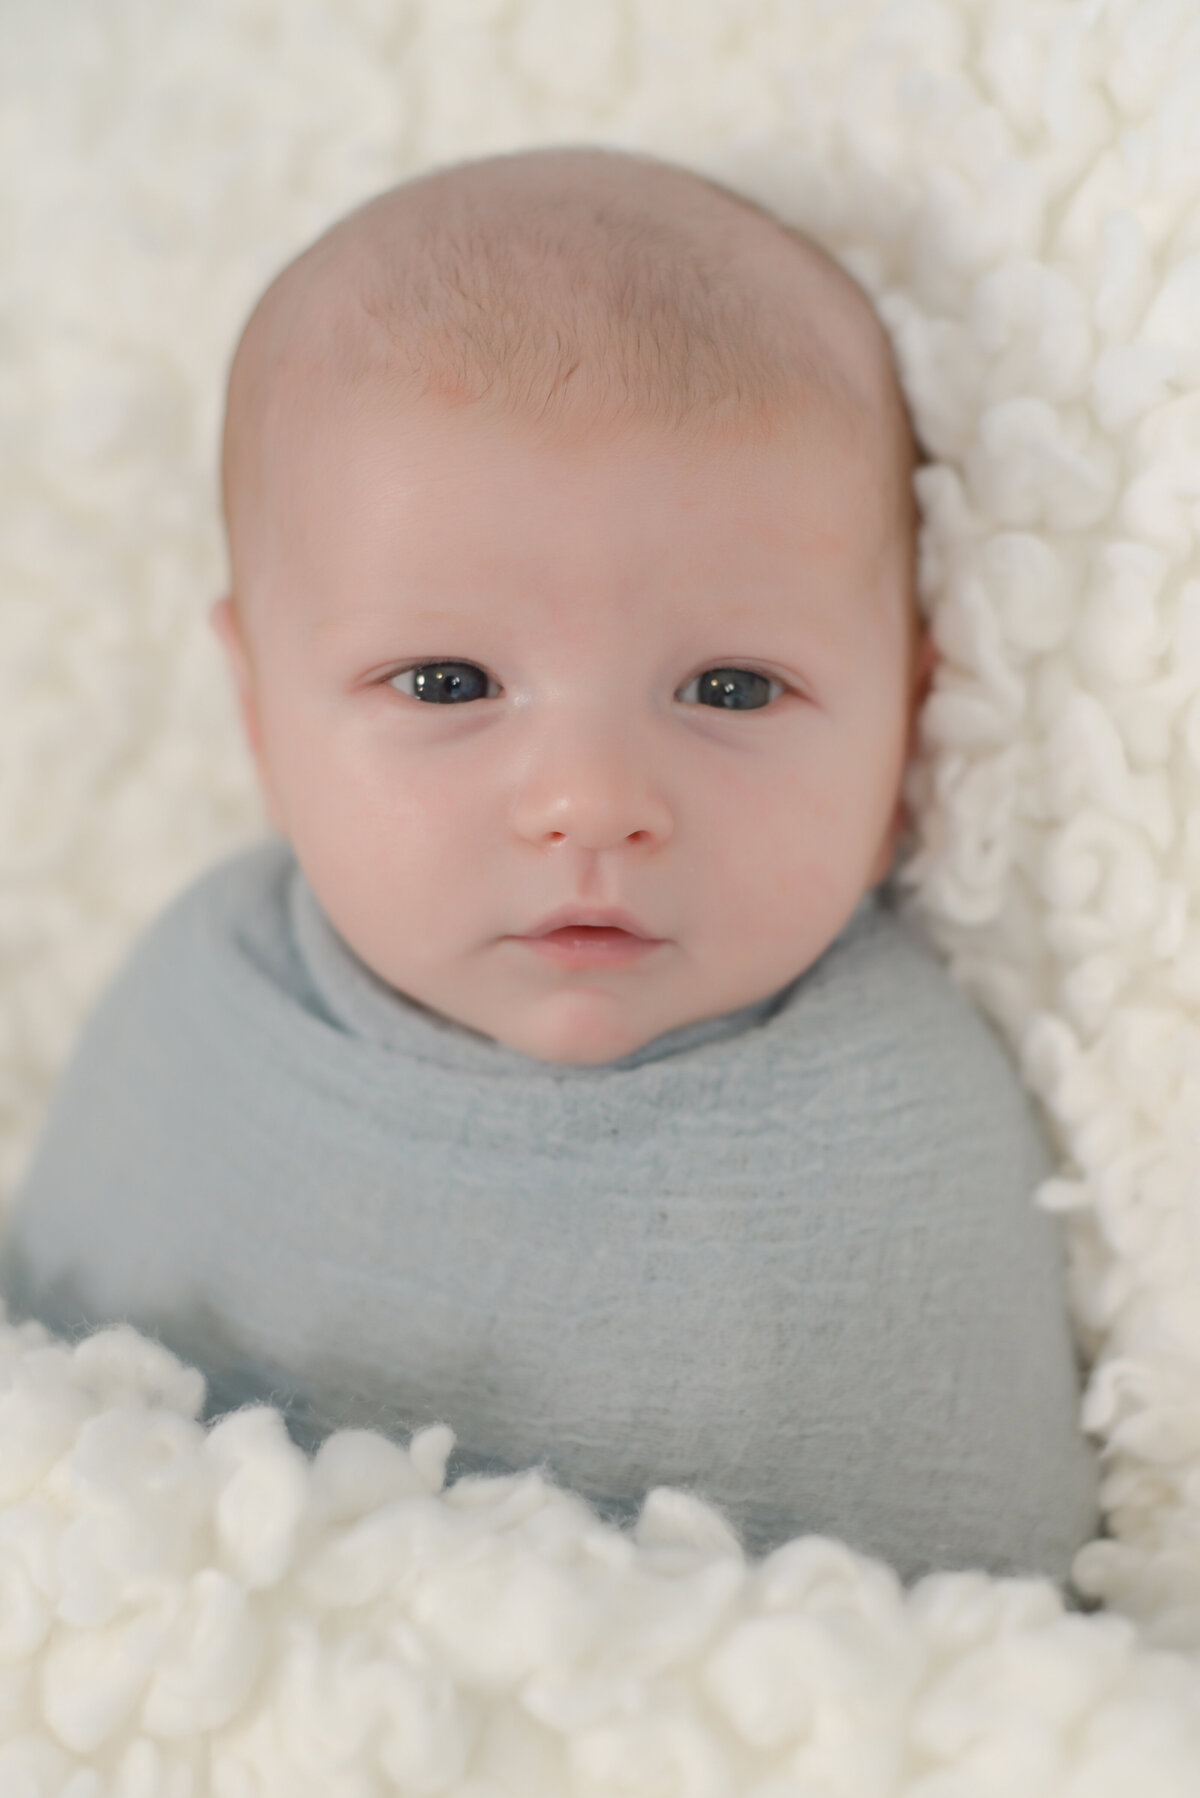 Newborn baby boy portrait in Wells Maine